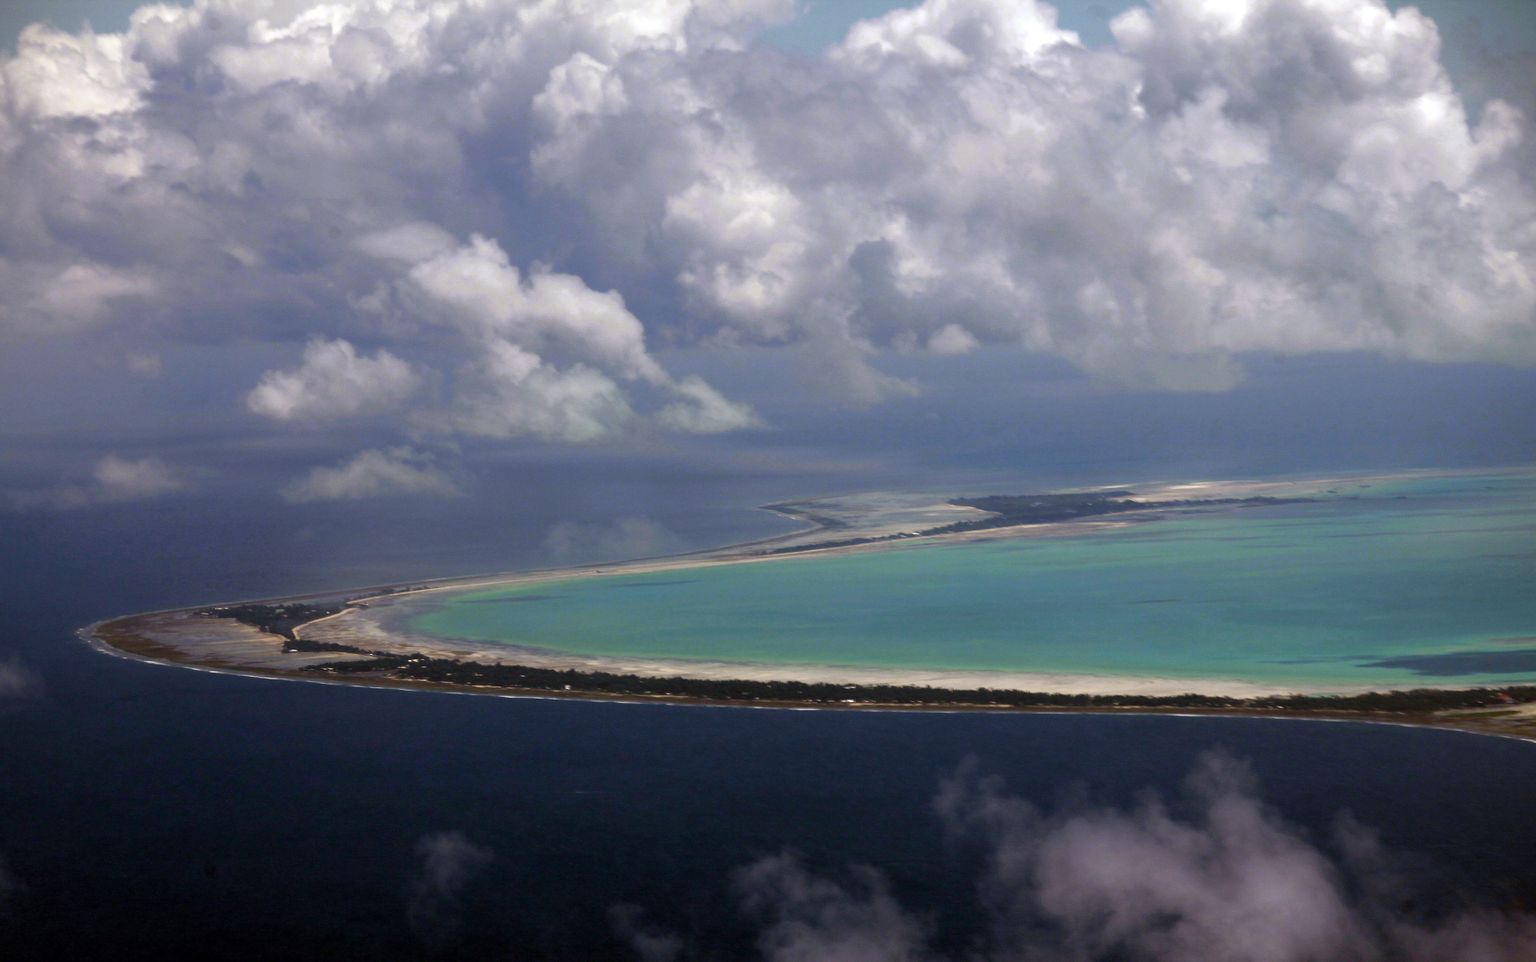 33 atollist ja saarekesest koosnev Kiribati saareriik Vaikses ookeanis on üks maailma piirkondadest, mis ookeani veetaseme tõusu tõttu oma pindala kaotab. Vaid mõned meetrid üle veepinna kerkivatel saartel elab kokku 120 tuhat inimest ning kuna saartel napib töökohti, töötab suur osa neist meremeestena.